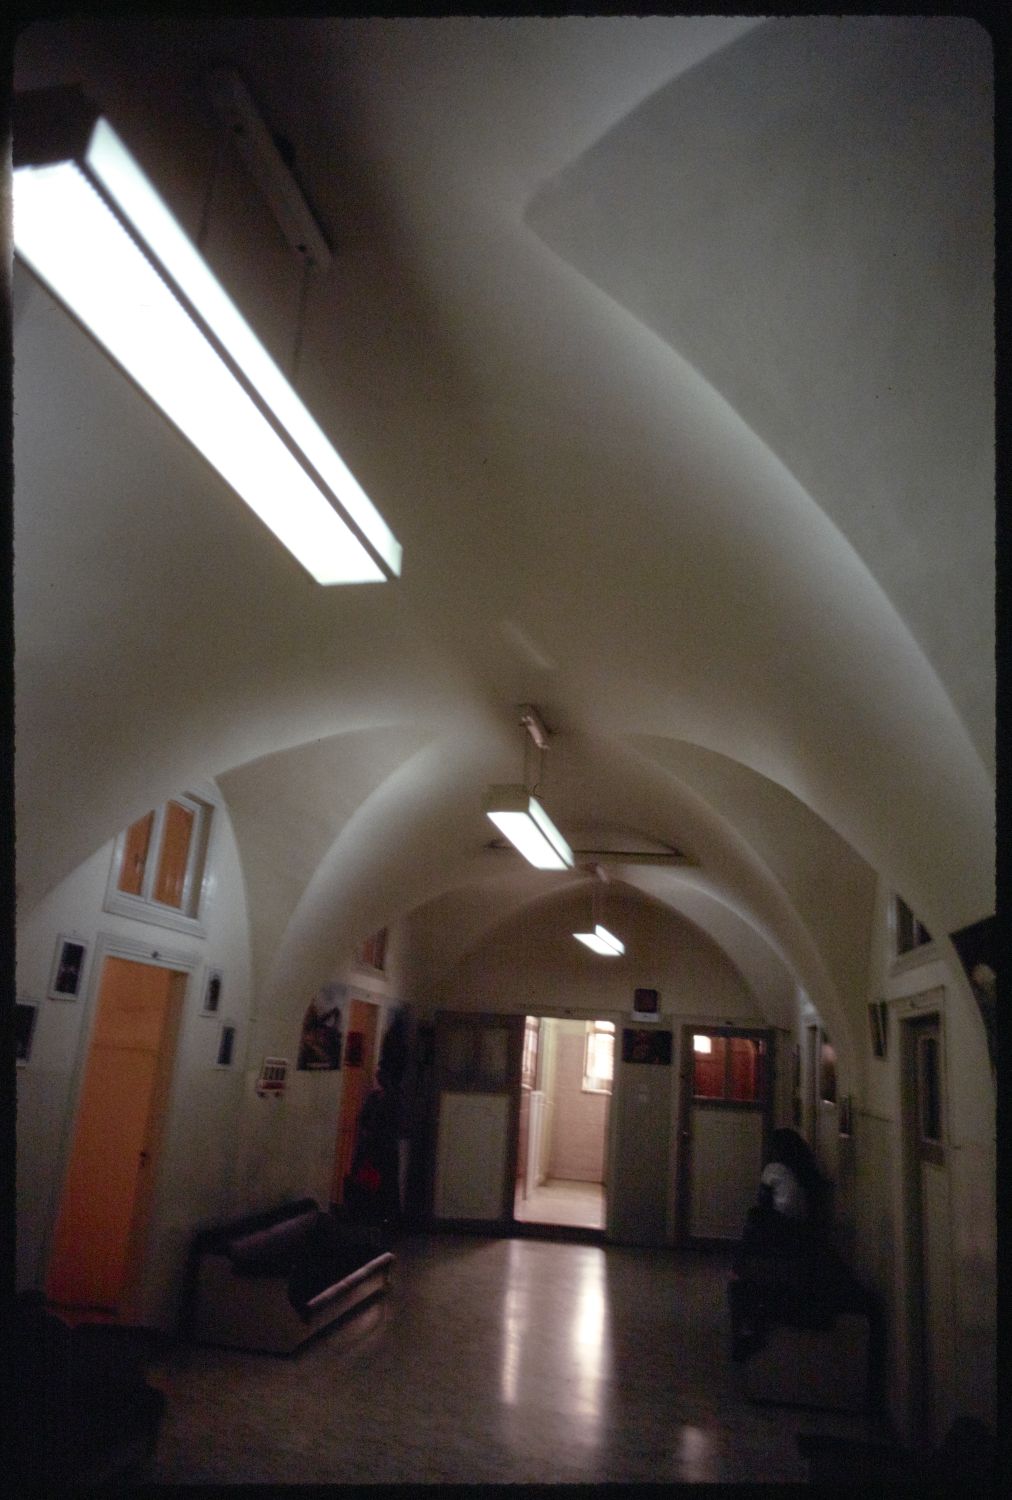 View of corridor on ground level.